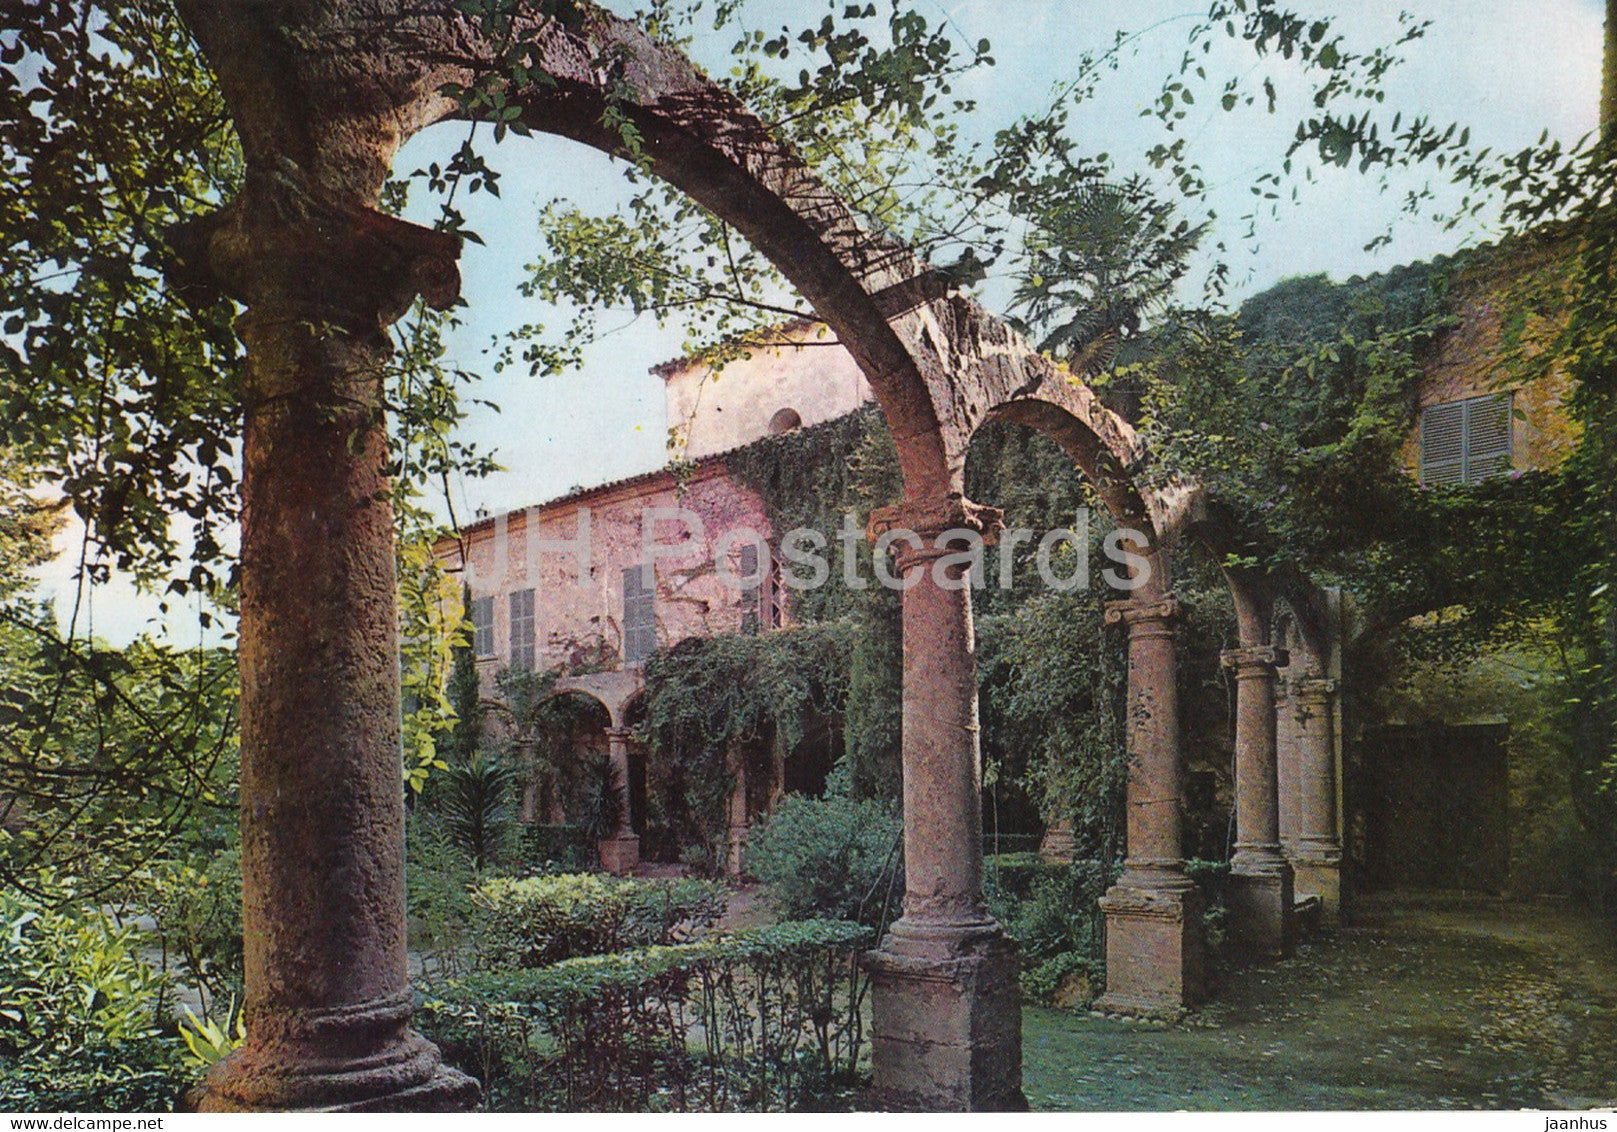 Santa Maria - Mallorca - Antiguo Convento de los Minimos - Claustro y Jardin - Franciscan Monastery - Spain - unused - JH Postcards